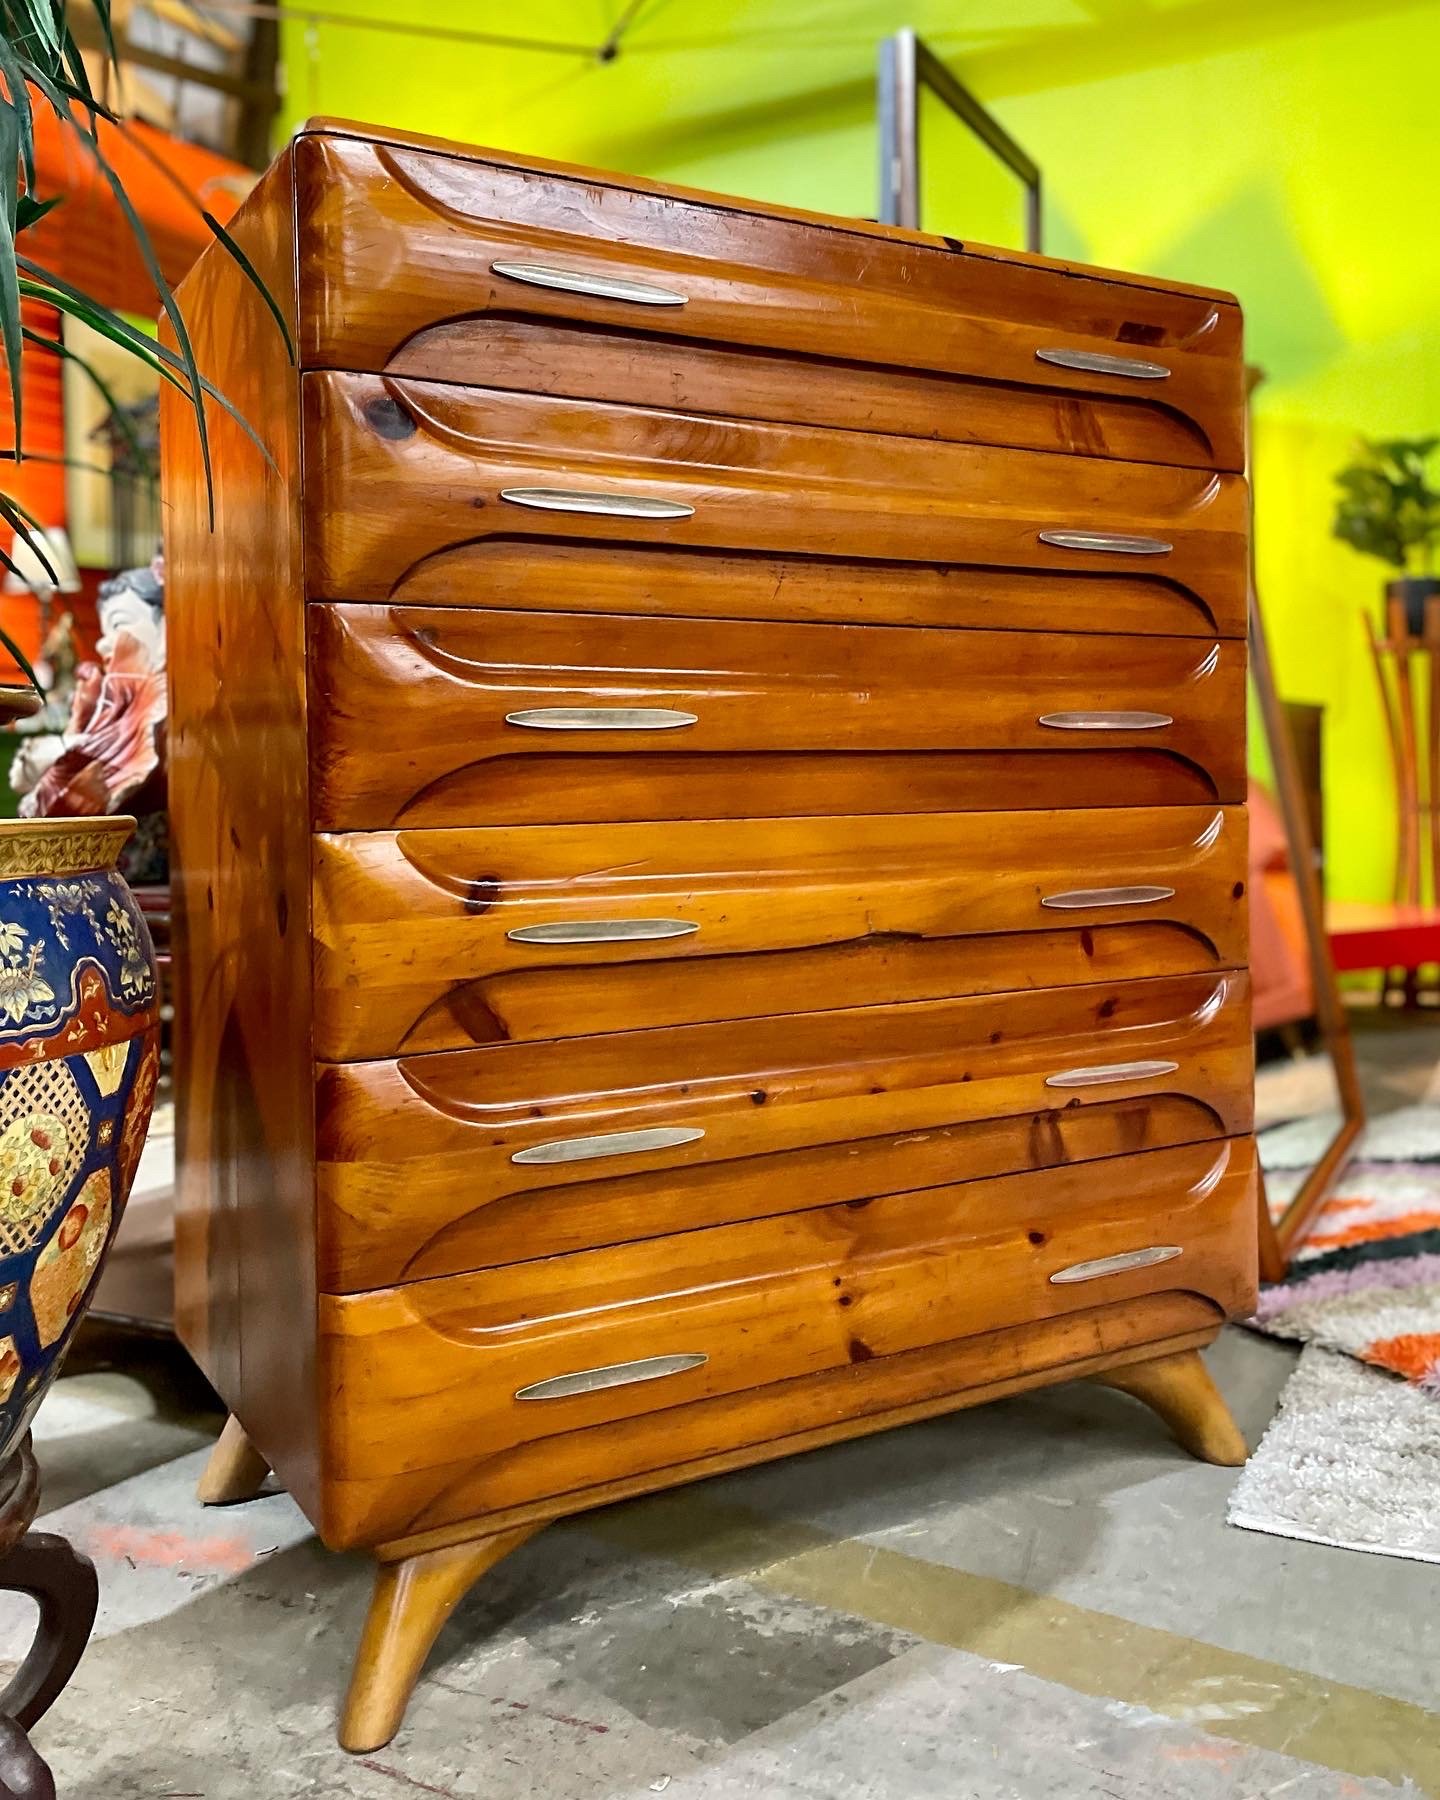 Floor 13-New Orleans-Furniture-Antique-Vintage-Shockey-Sculptured Pine-Dresser-02.JPG